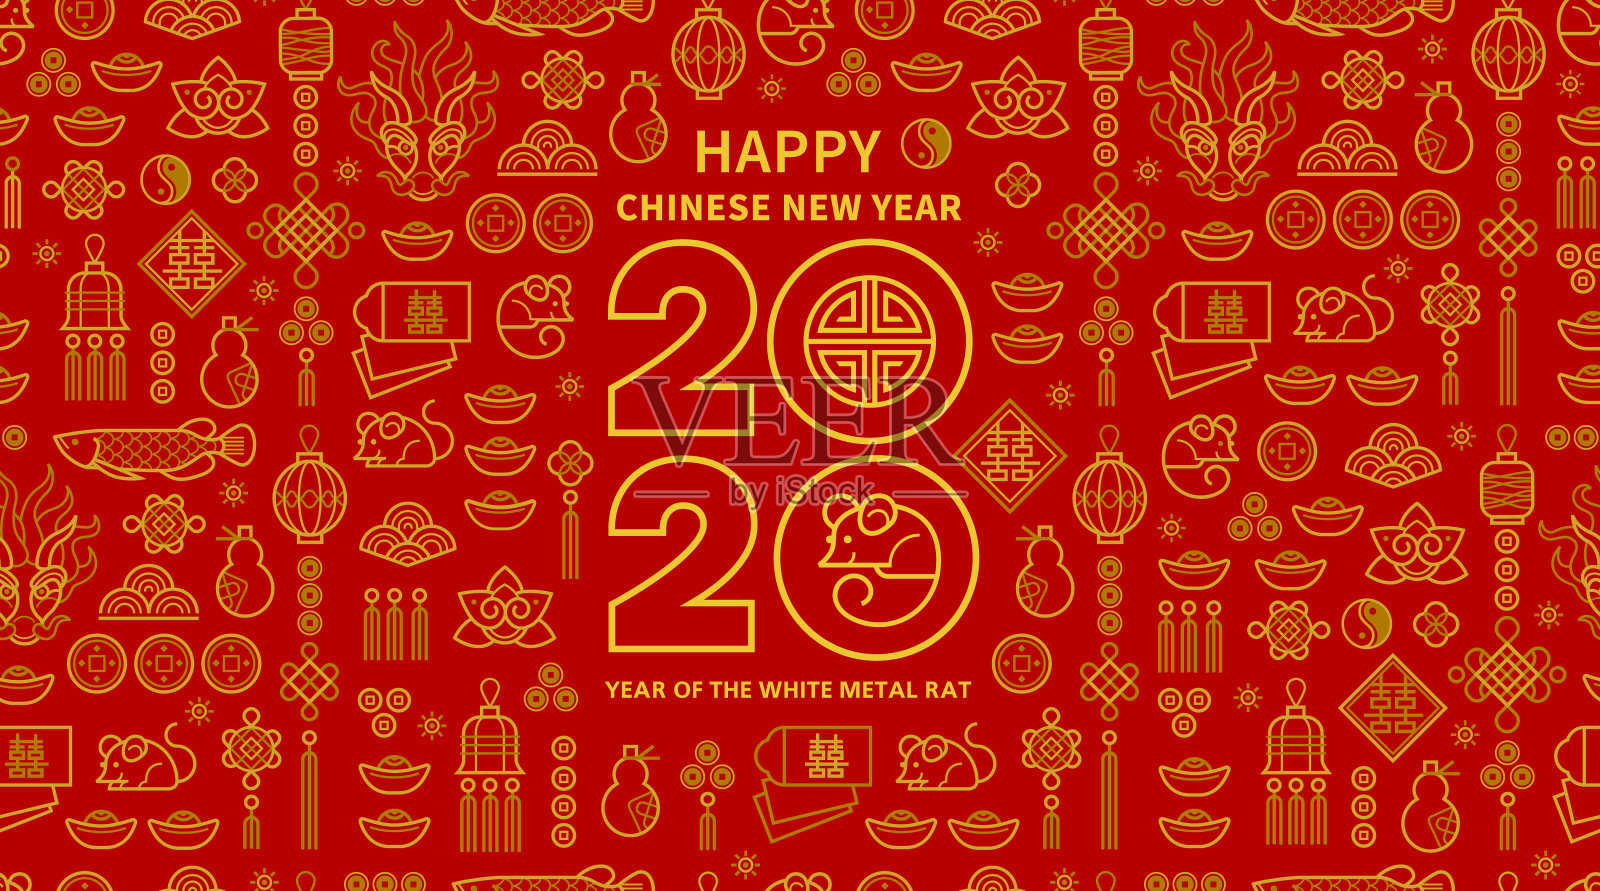 卡片上印有中国农历2020年的白色金属老鼠图案。插画图片素材